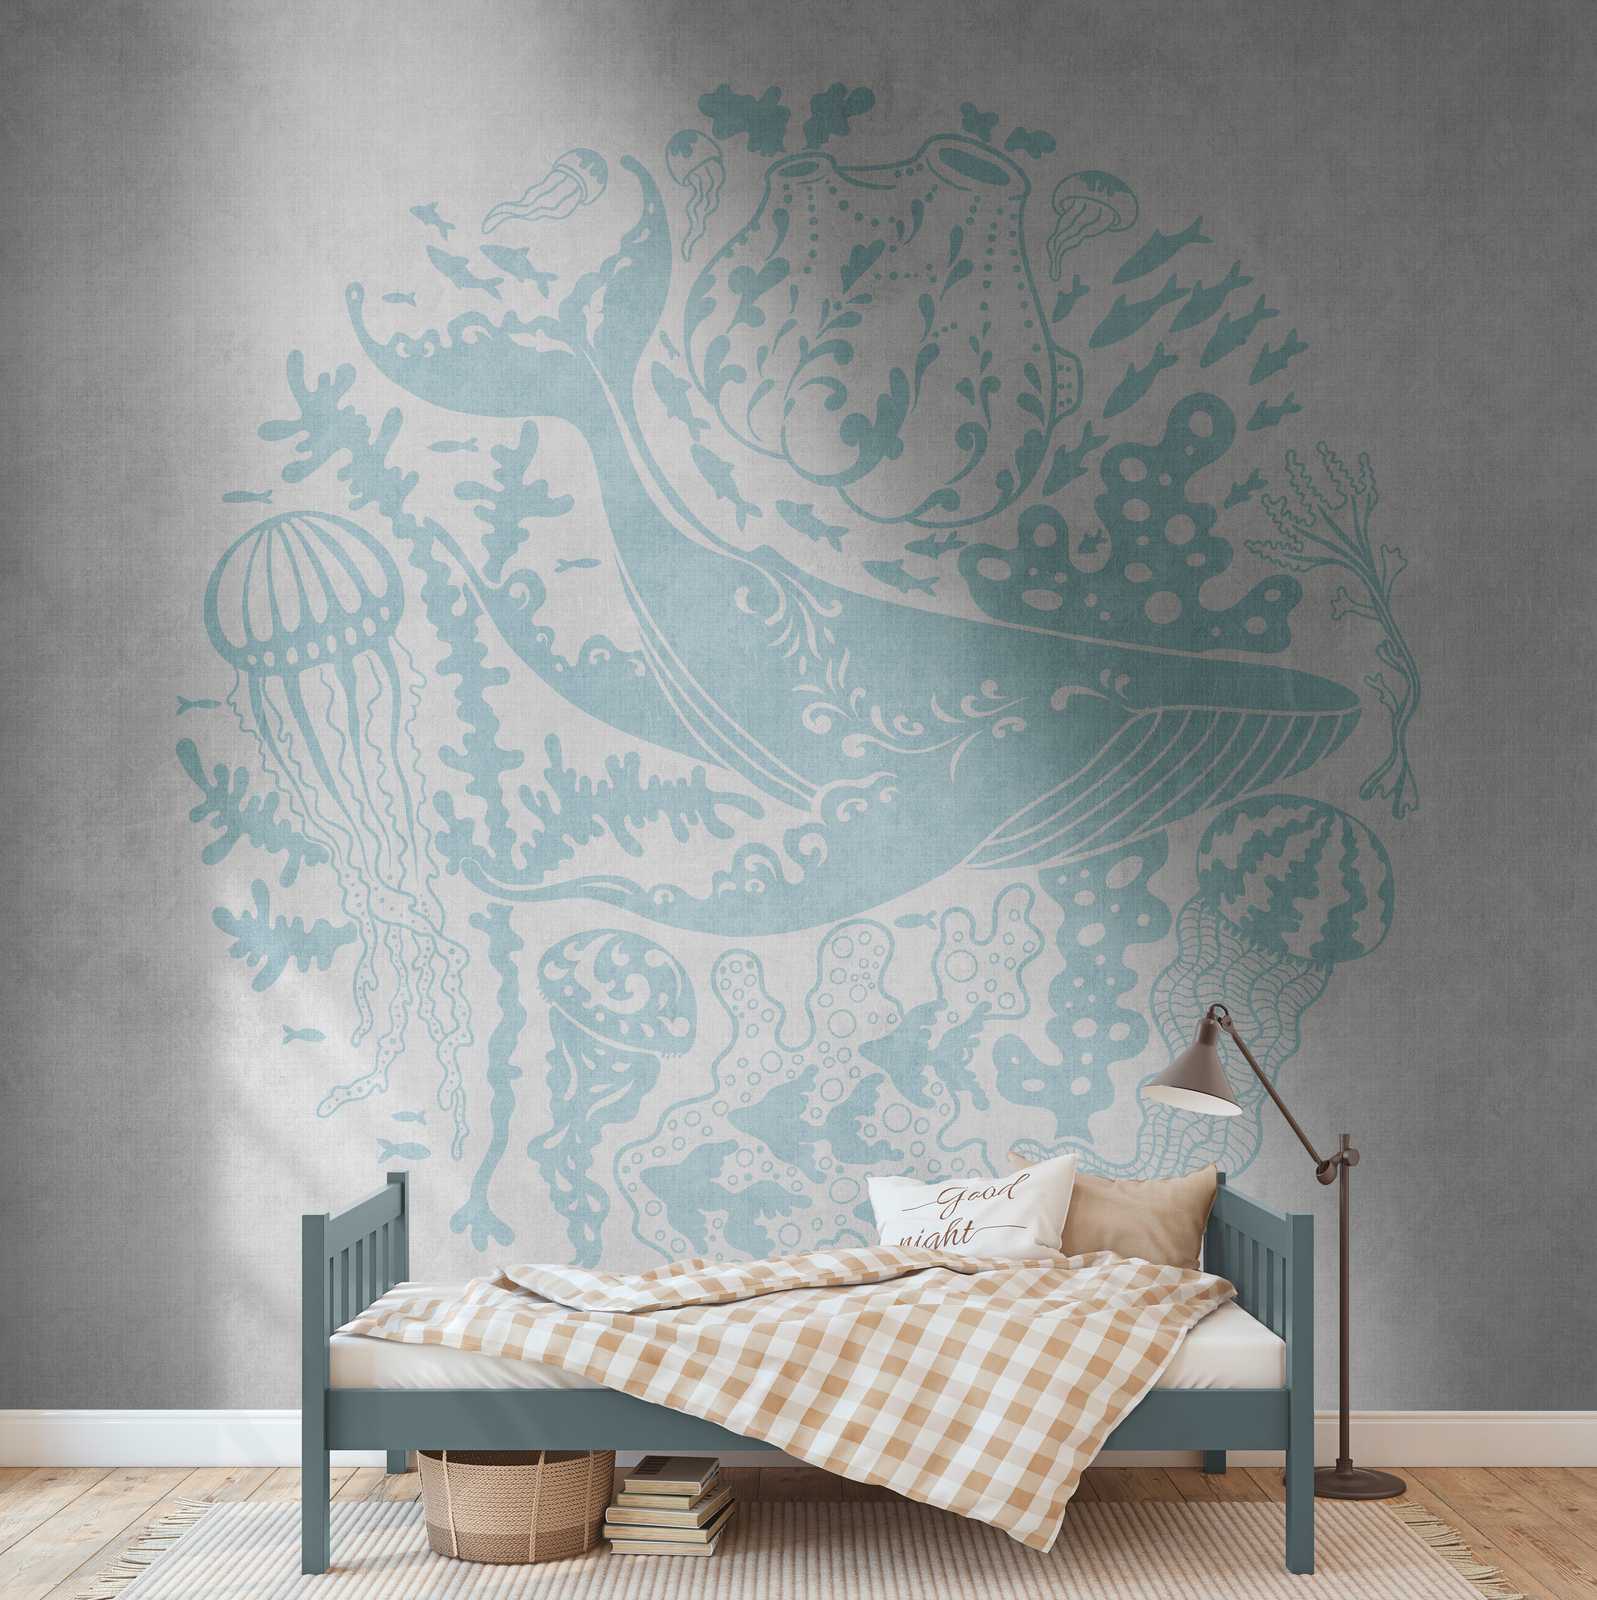             wallpapers nieuwigheid | motief behang onderwater walvis, kwal & koraal
        